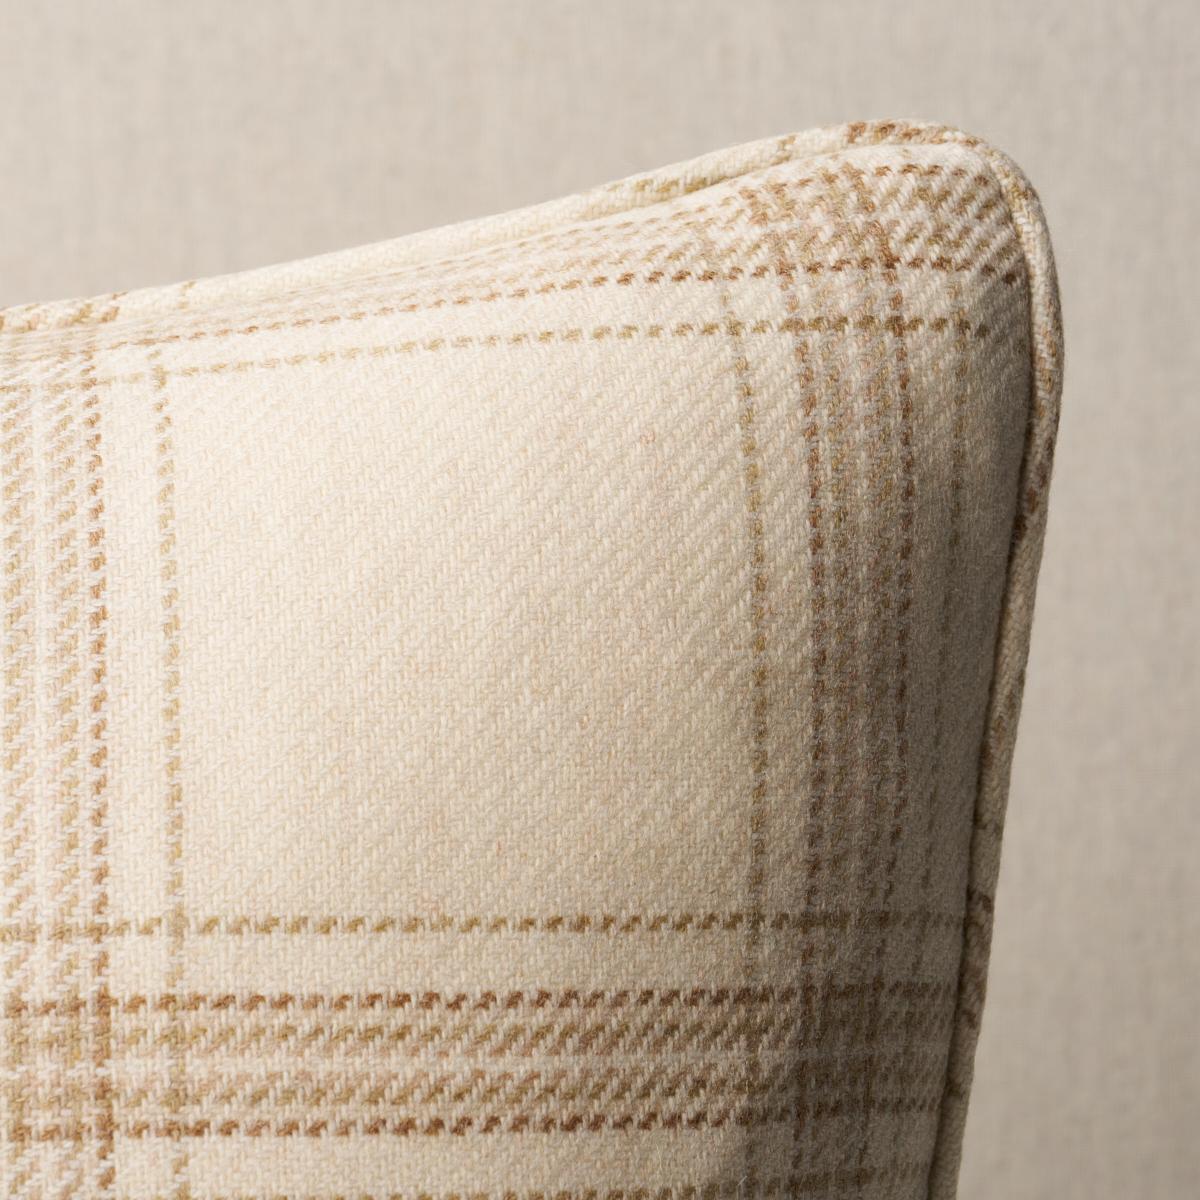 Dieses Kissen besteht aus Blackburn Merinowolle mit einem selbstklebenden Rand. Blackburn Merino Plaid in Elfenbein ist ein traditionelles Köpergewebe aus superfeinen Lammwollgarnen, die für einen wunderbaren Heathered-Effekt mélange-gesponnen